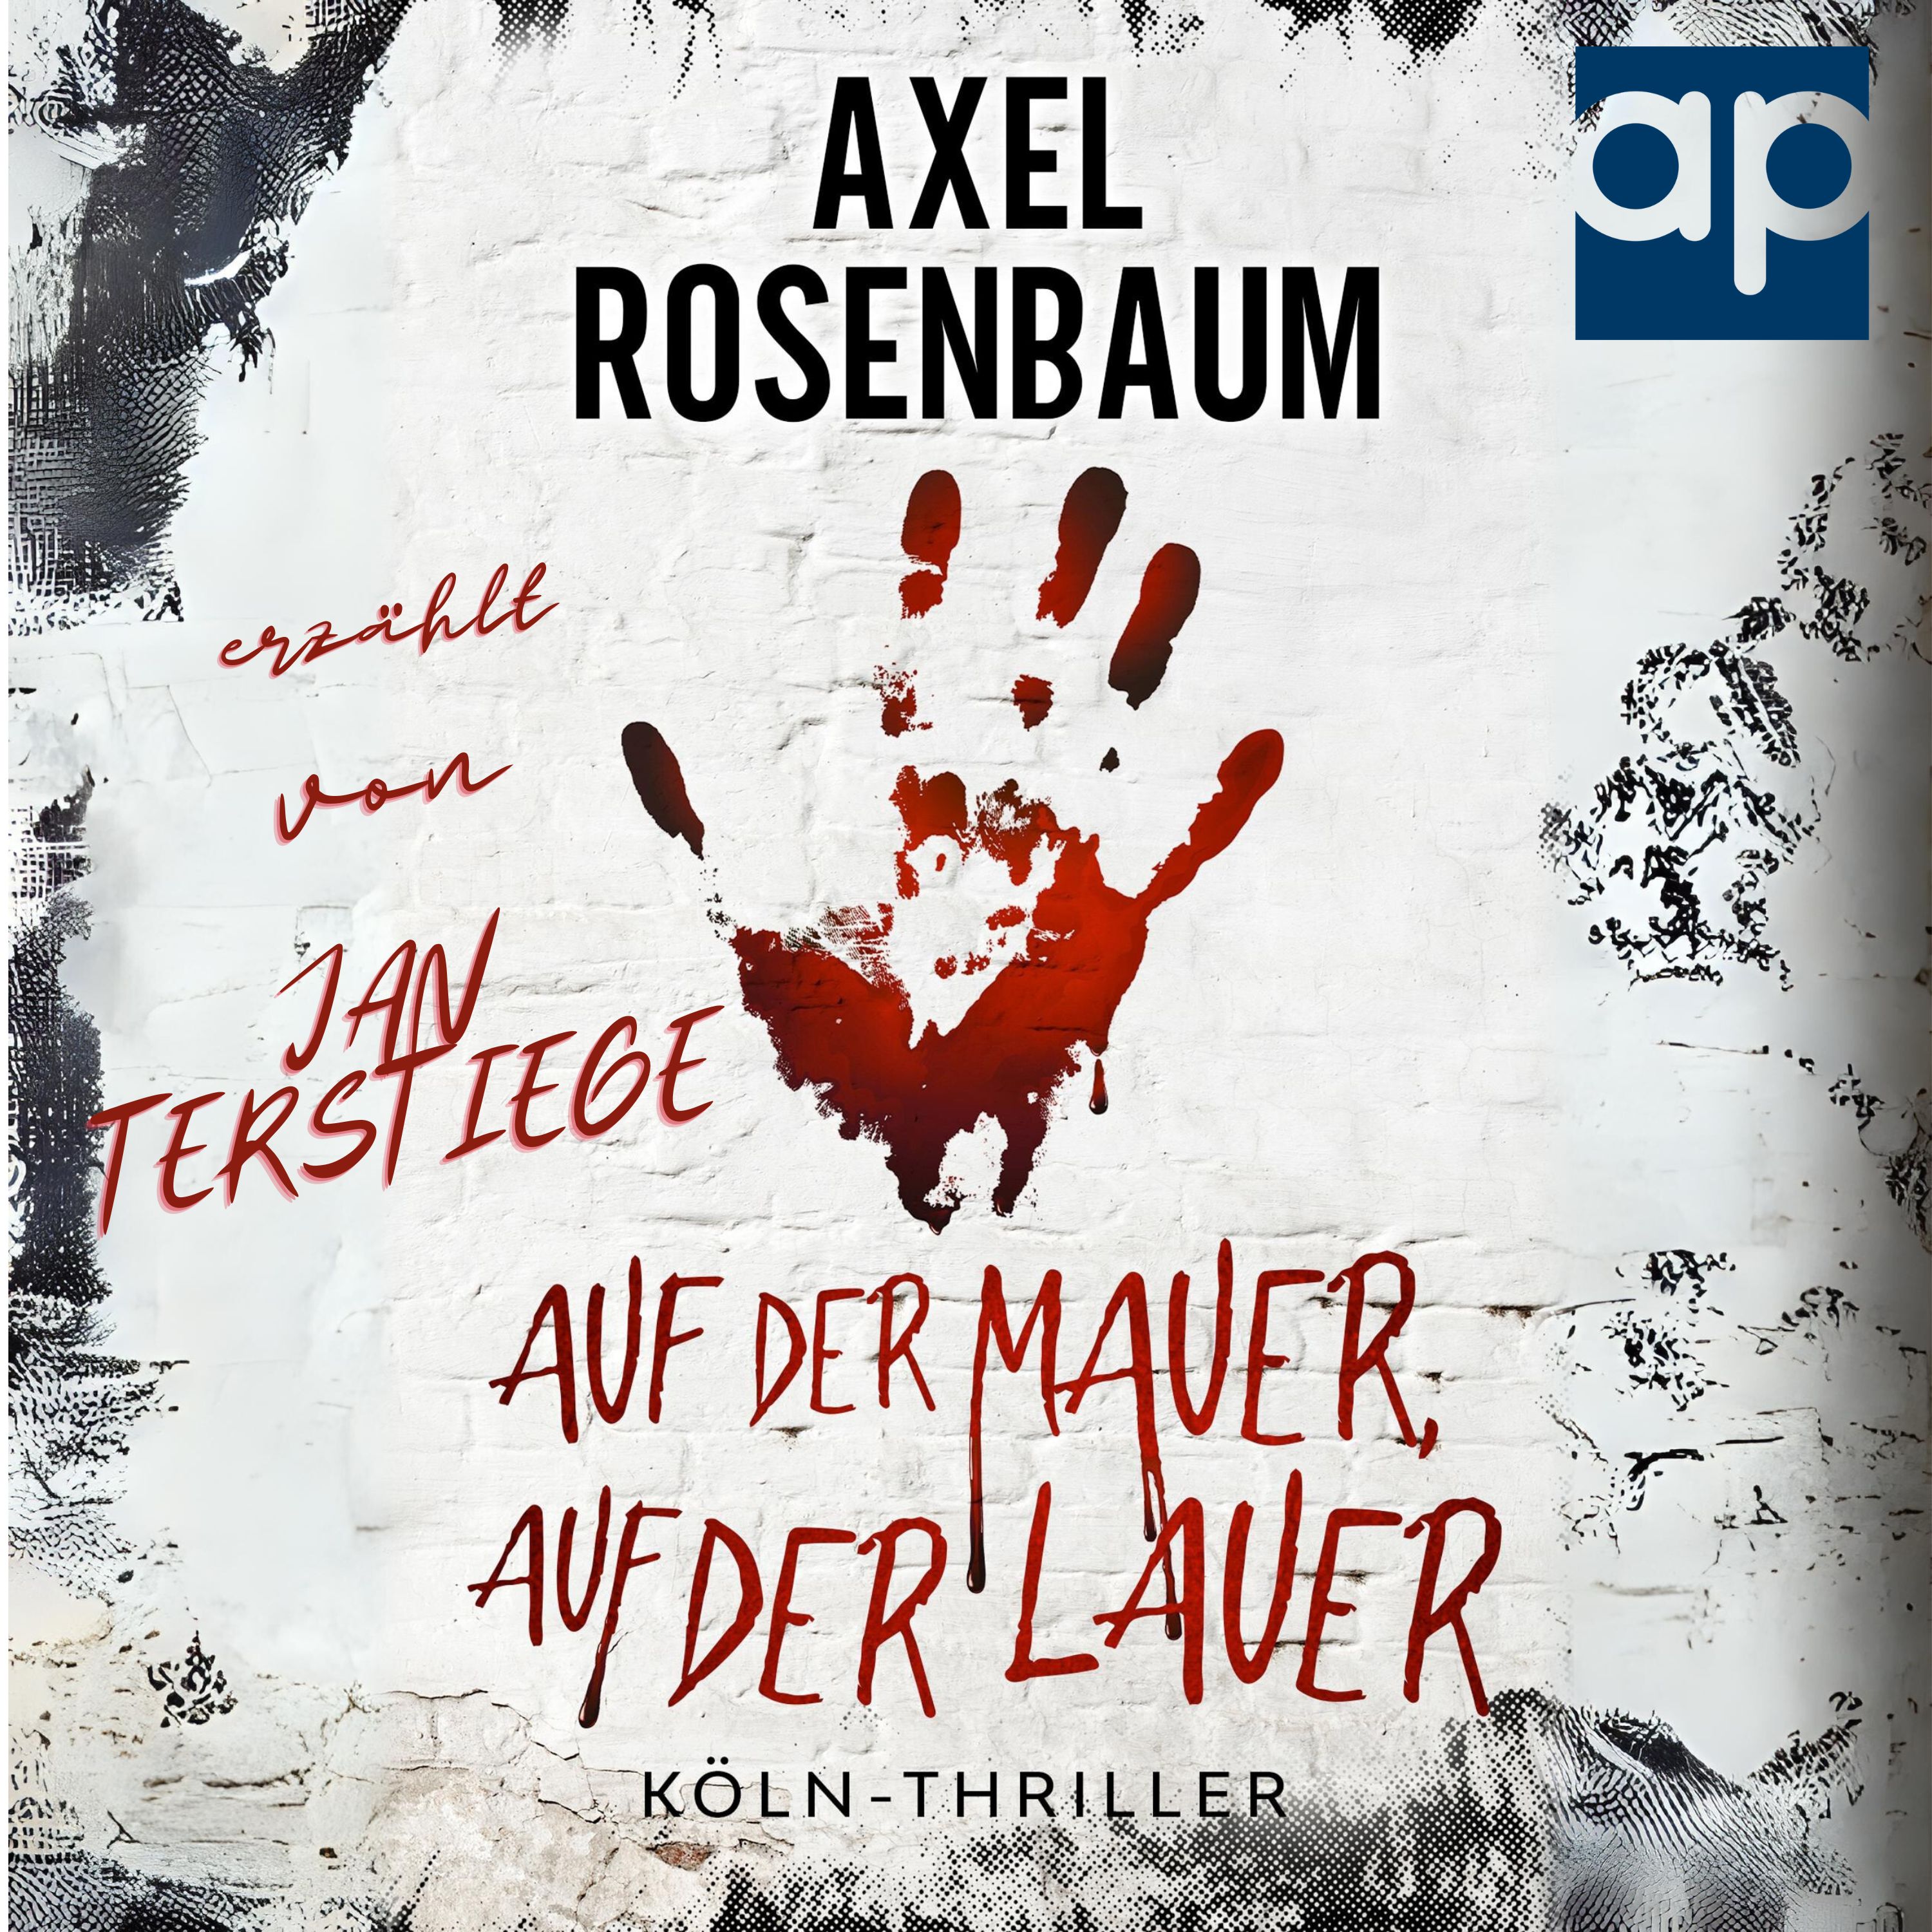 Jan Terstiege liest Auf der Mauer, auf der Lauer aus der Reihe der Köln-Thriller von Axel Rosenbaum